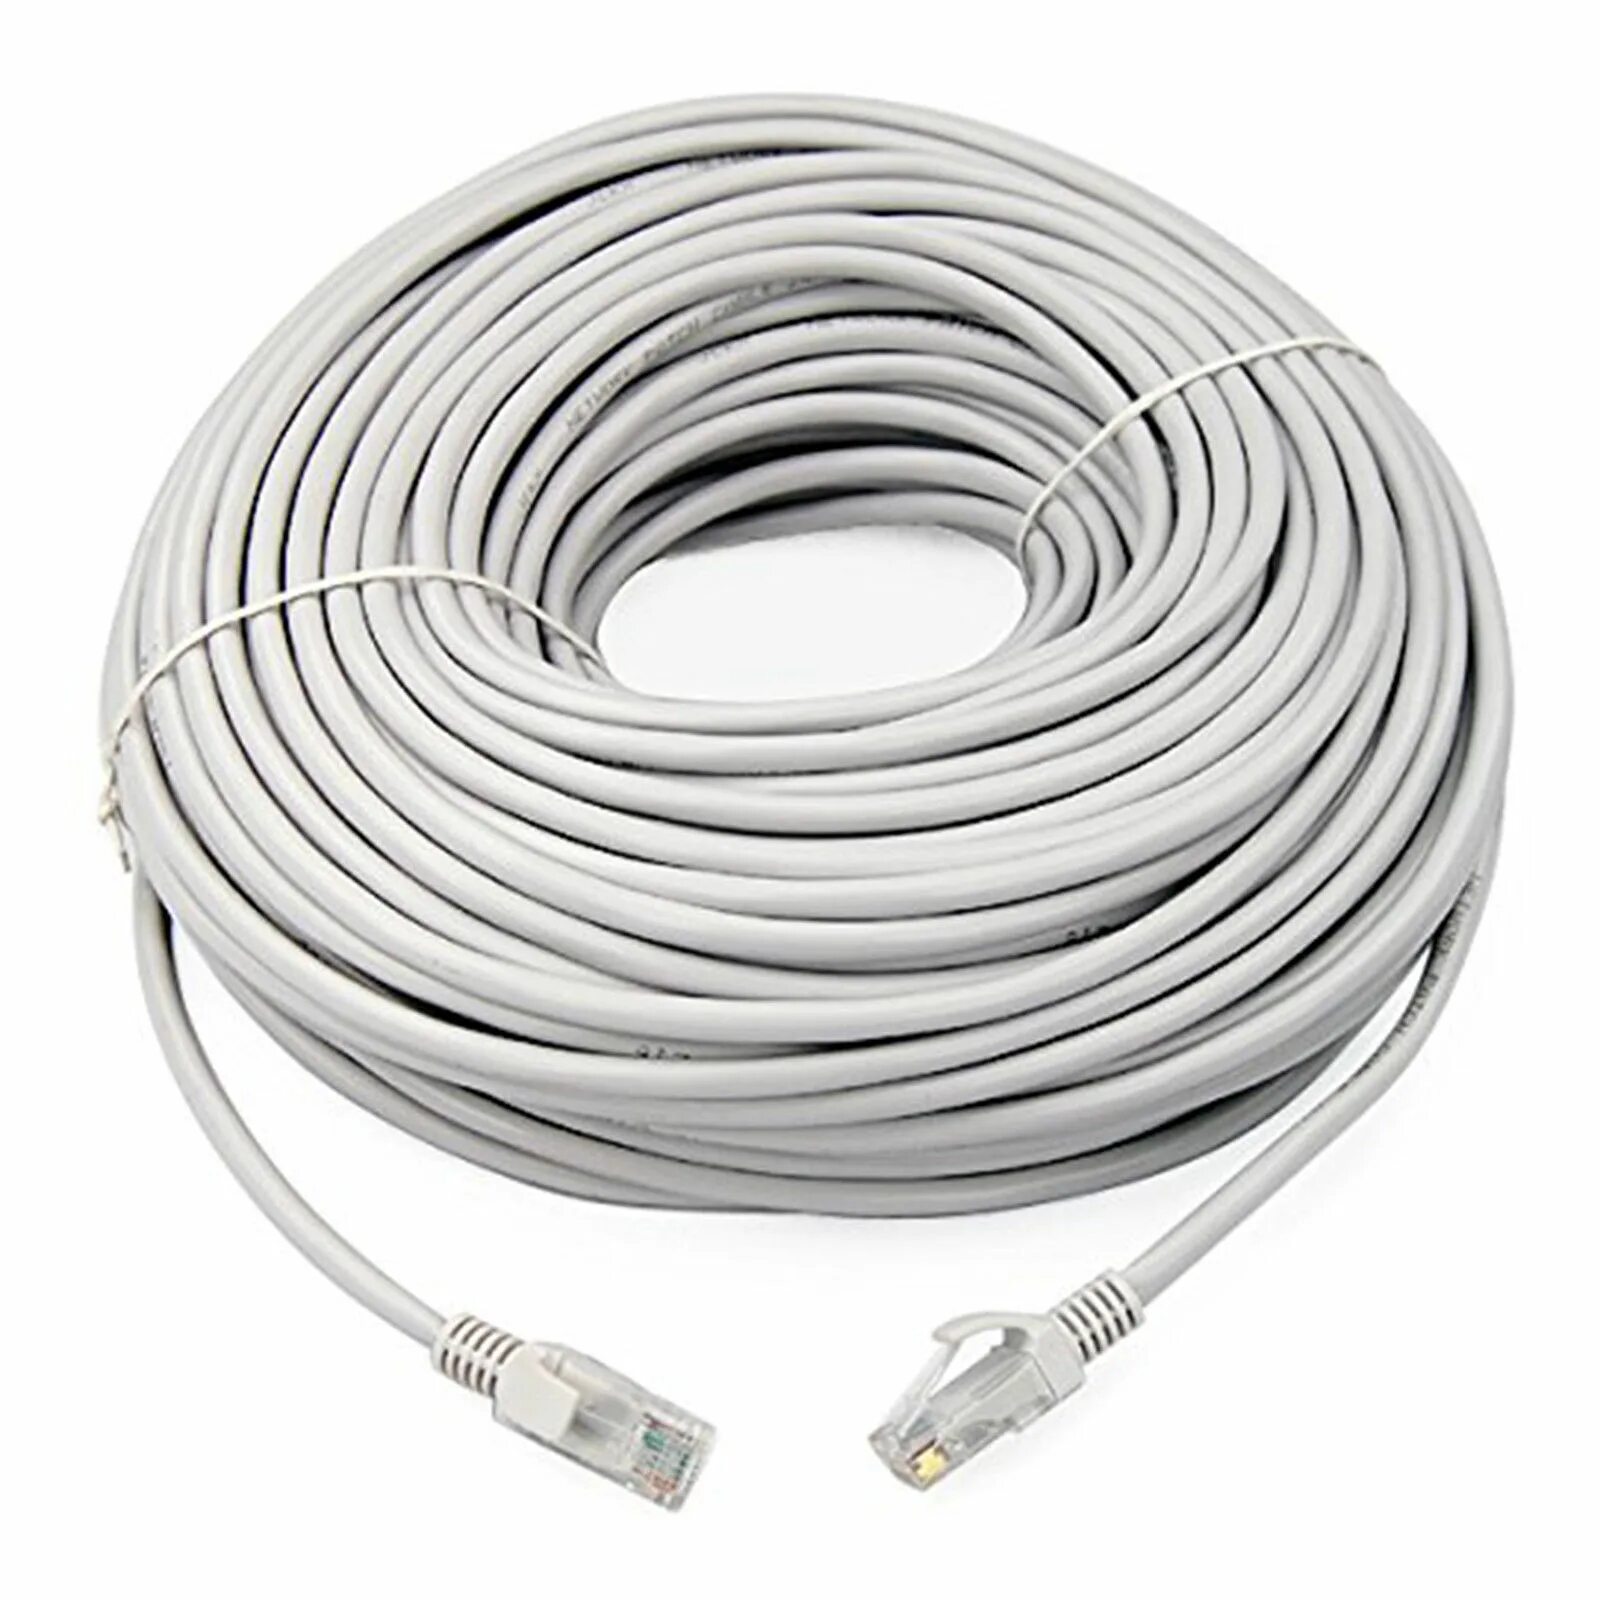 Кабель Ethernet 5e 10 метров. 100 Метров кабель патч корд. UTP Cable RJ 45 10 M. Ethernet кабель Cat-5e - 40 м.